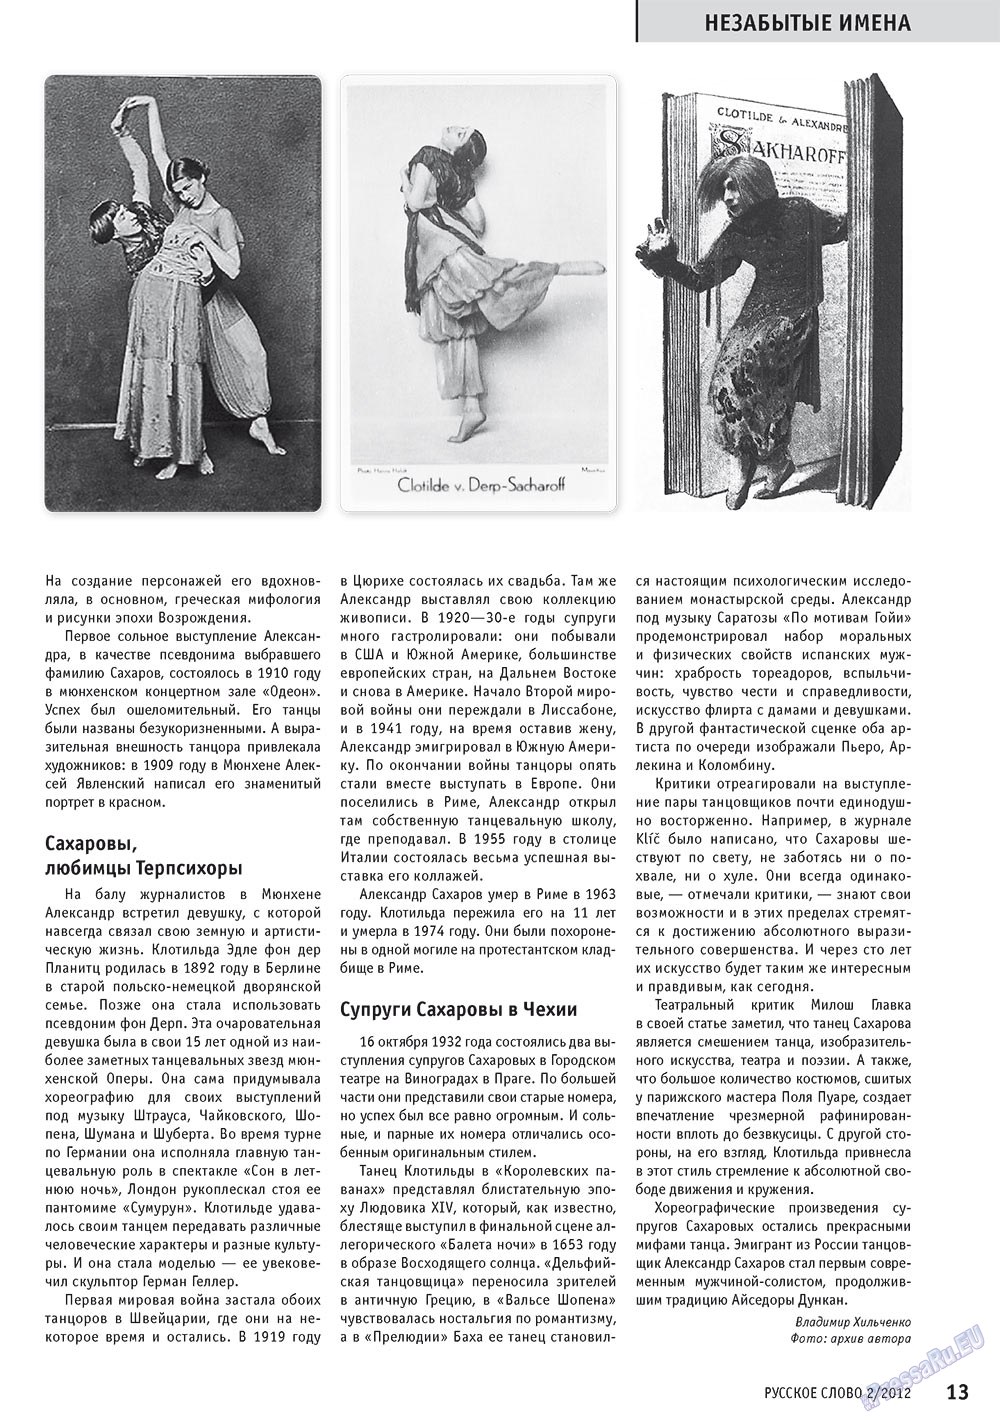 Русское слово, журнал. 2012 №2 стр.15